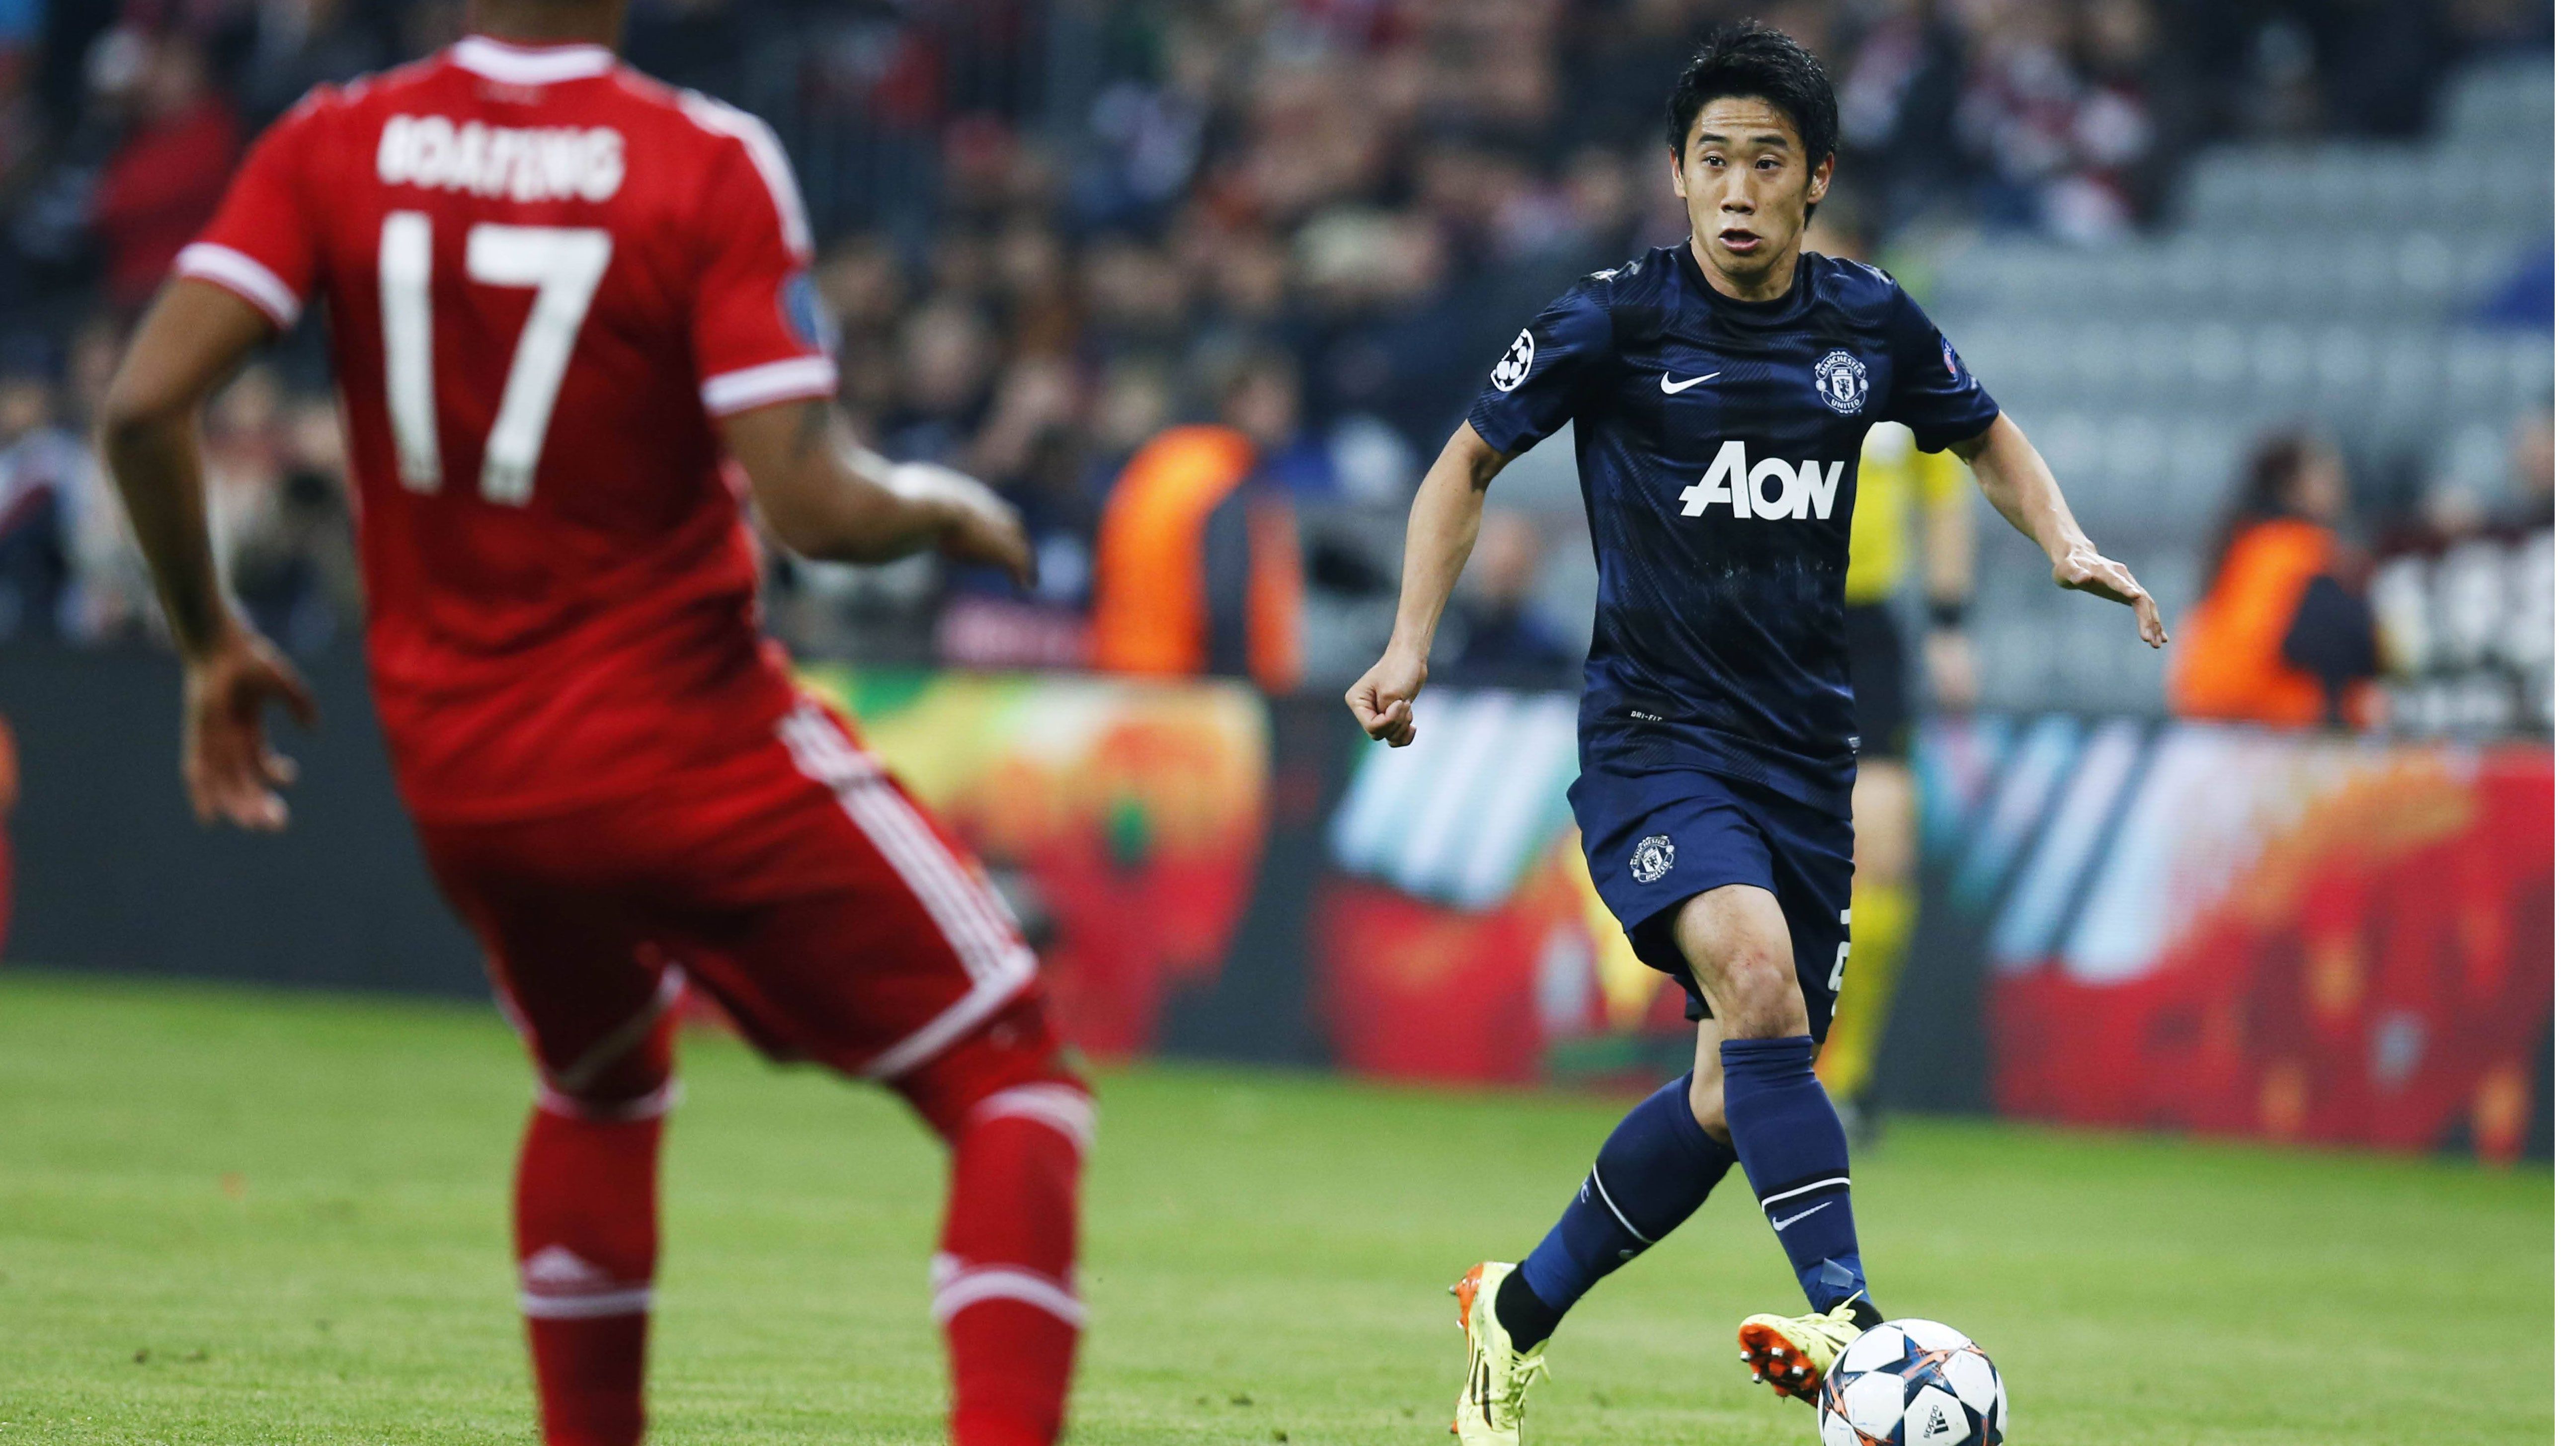 
                <strong>Shinji Kagawa</strong><br>
                2012 wollte sich Shinji Kagawa seinen Traum erfüllen und wechselte von Borussia Dortmund zu Manchester United. Dort konnte er aber bislang nicht an seine guten Leistungen anknüpfen. Ein Leihgeschäft könnte den Japaner zurück nach Dortmund bringen.
              